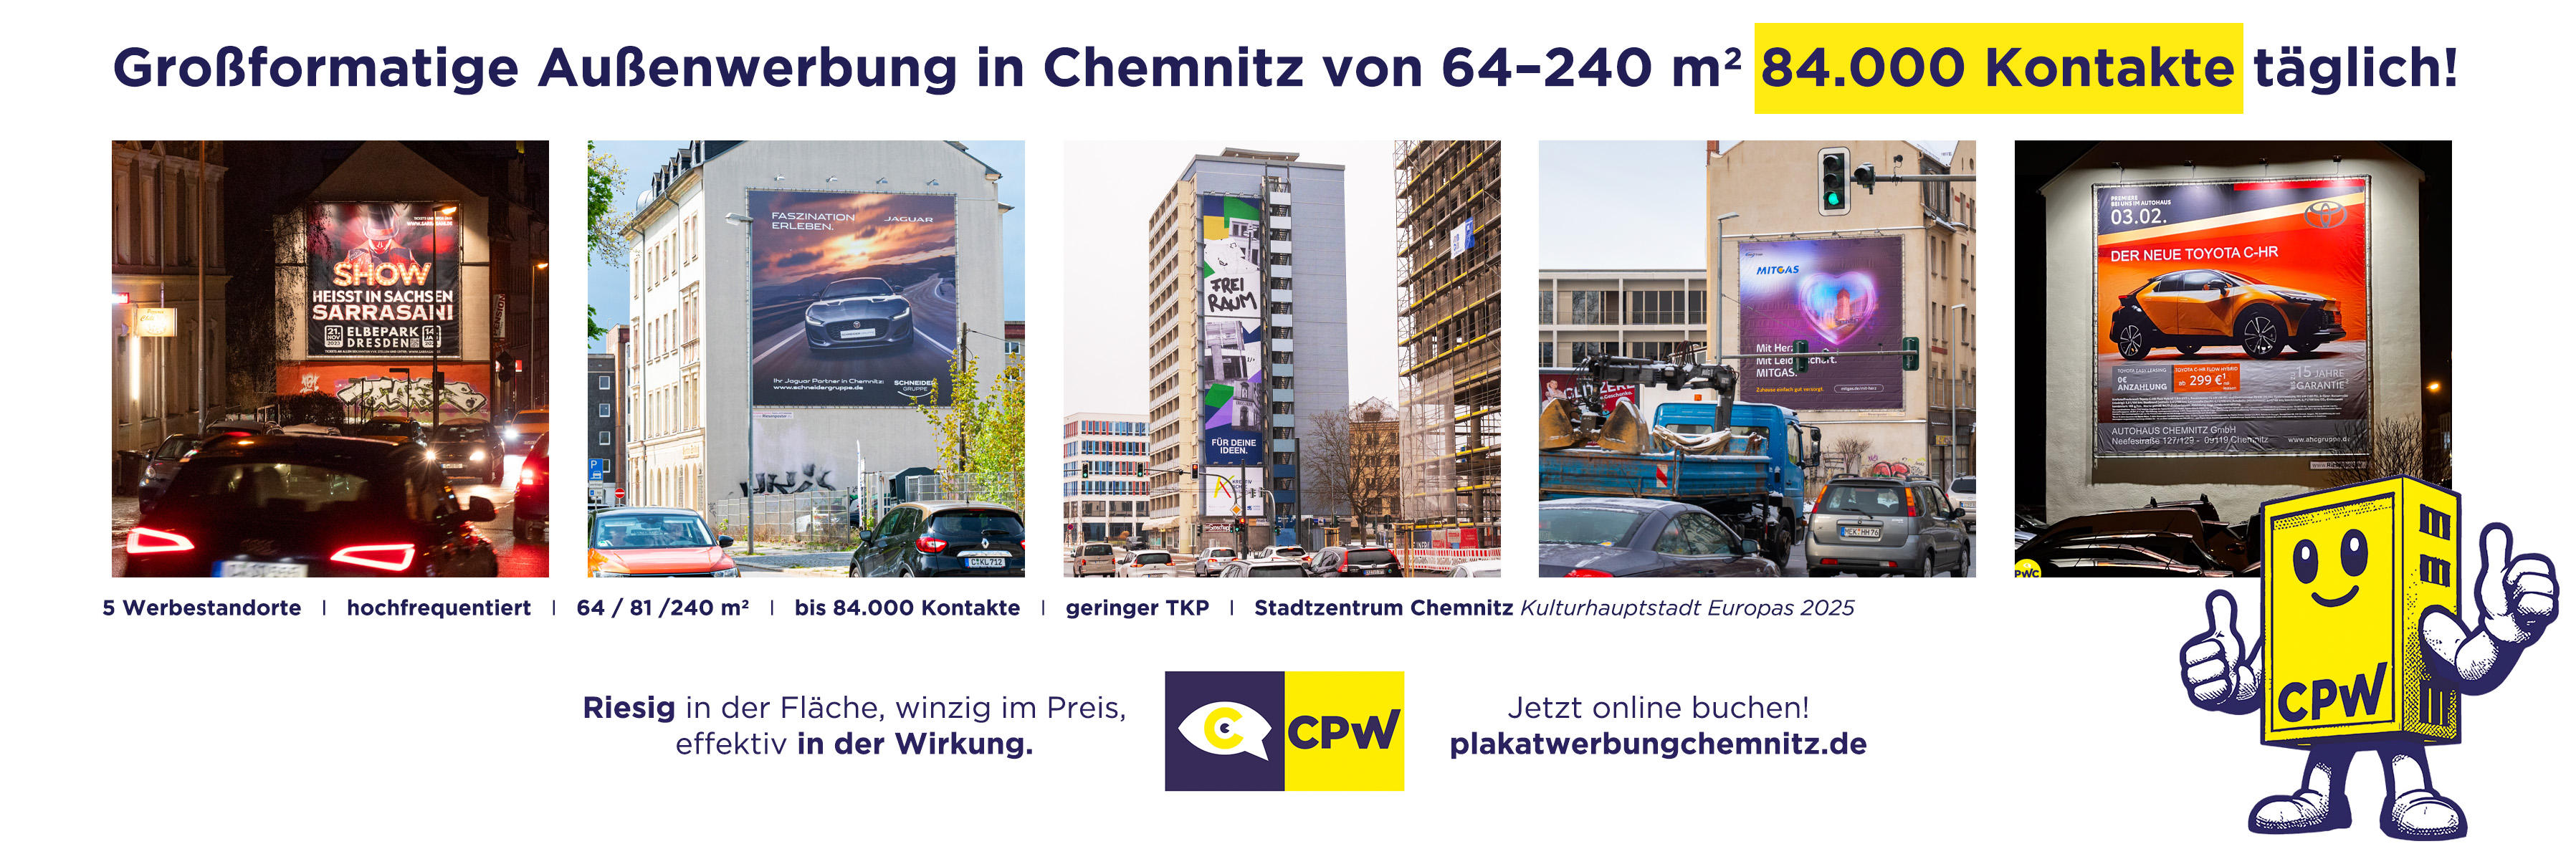 CPW Plakatwerbung Chemnitz / Markeking GmbH Chemnitz 0371 6665277